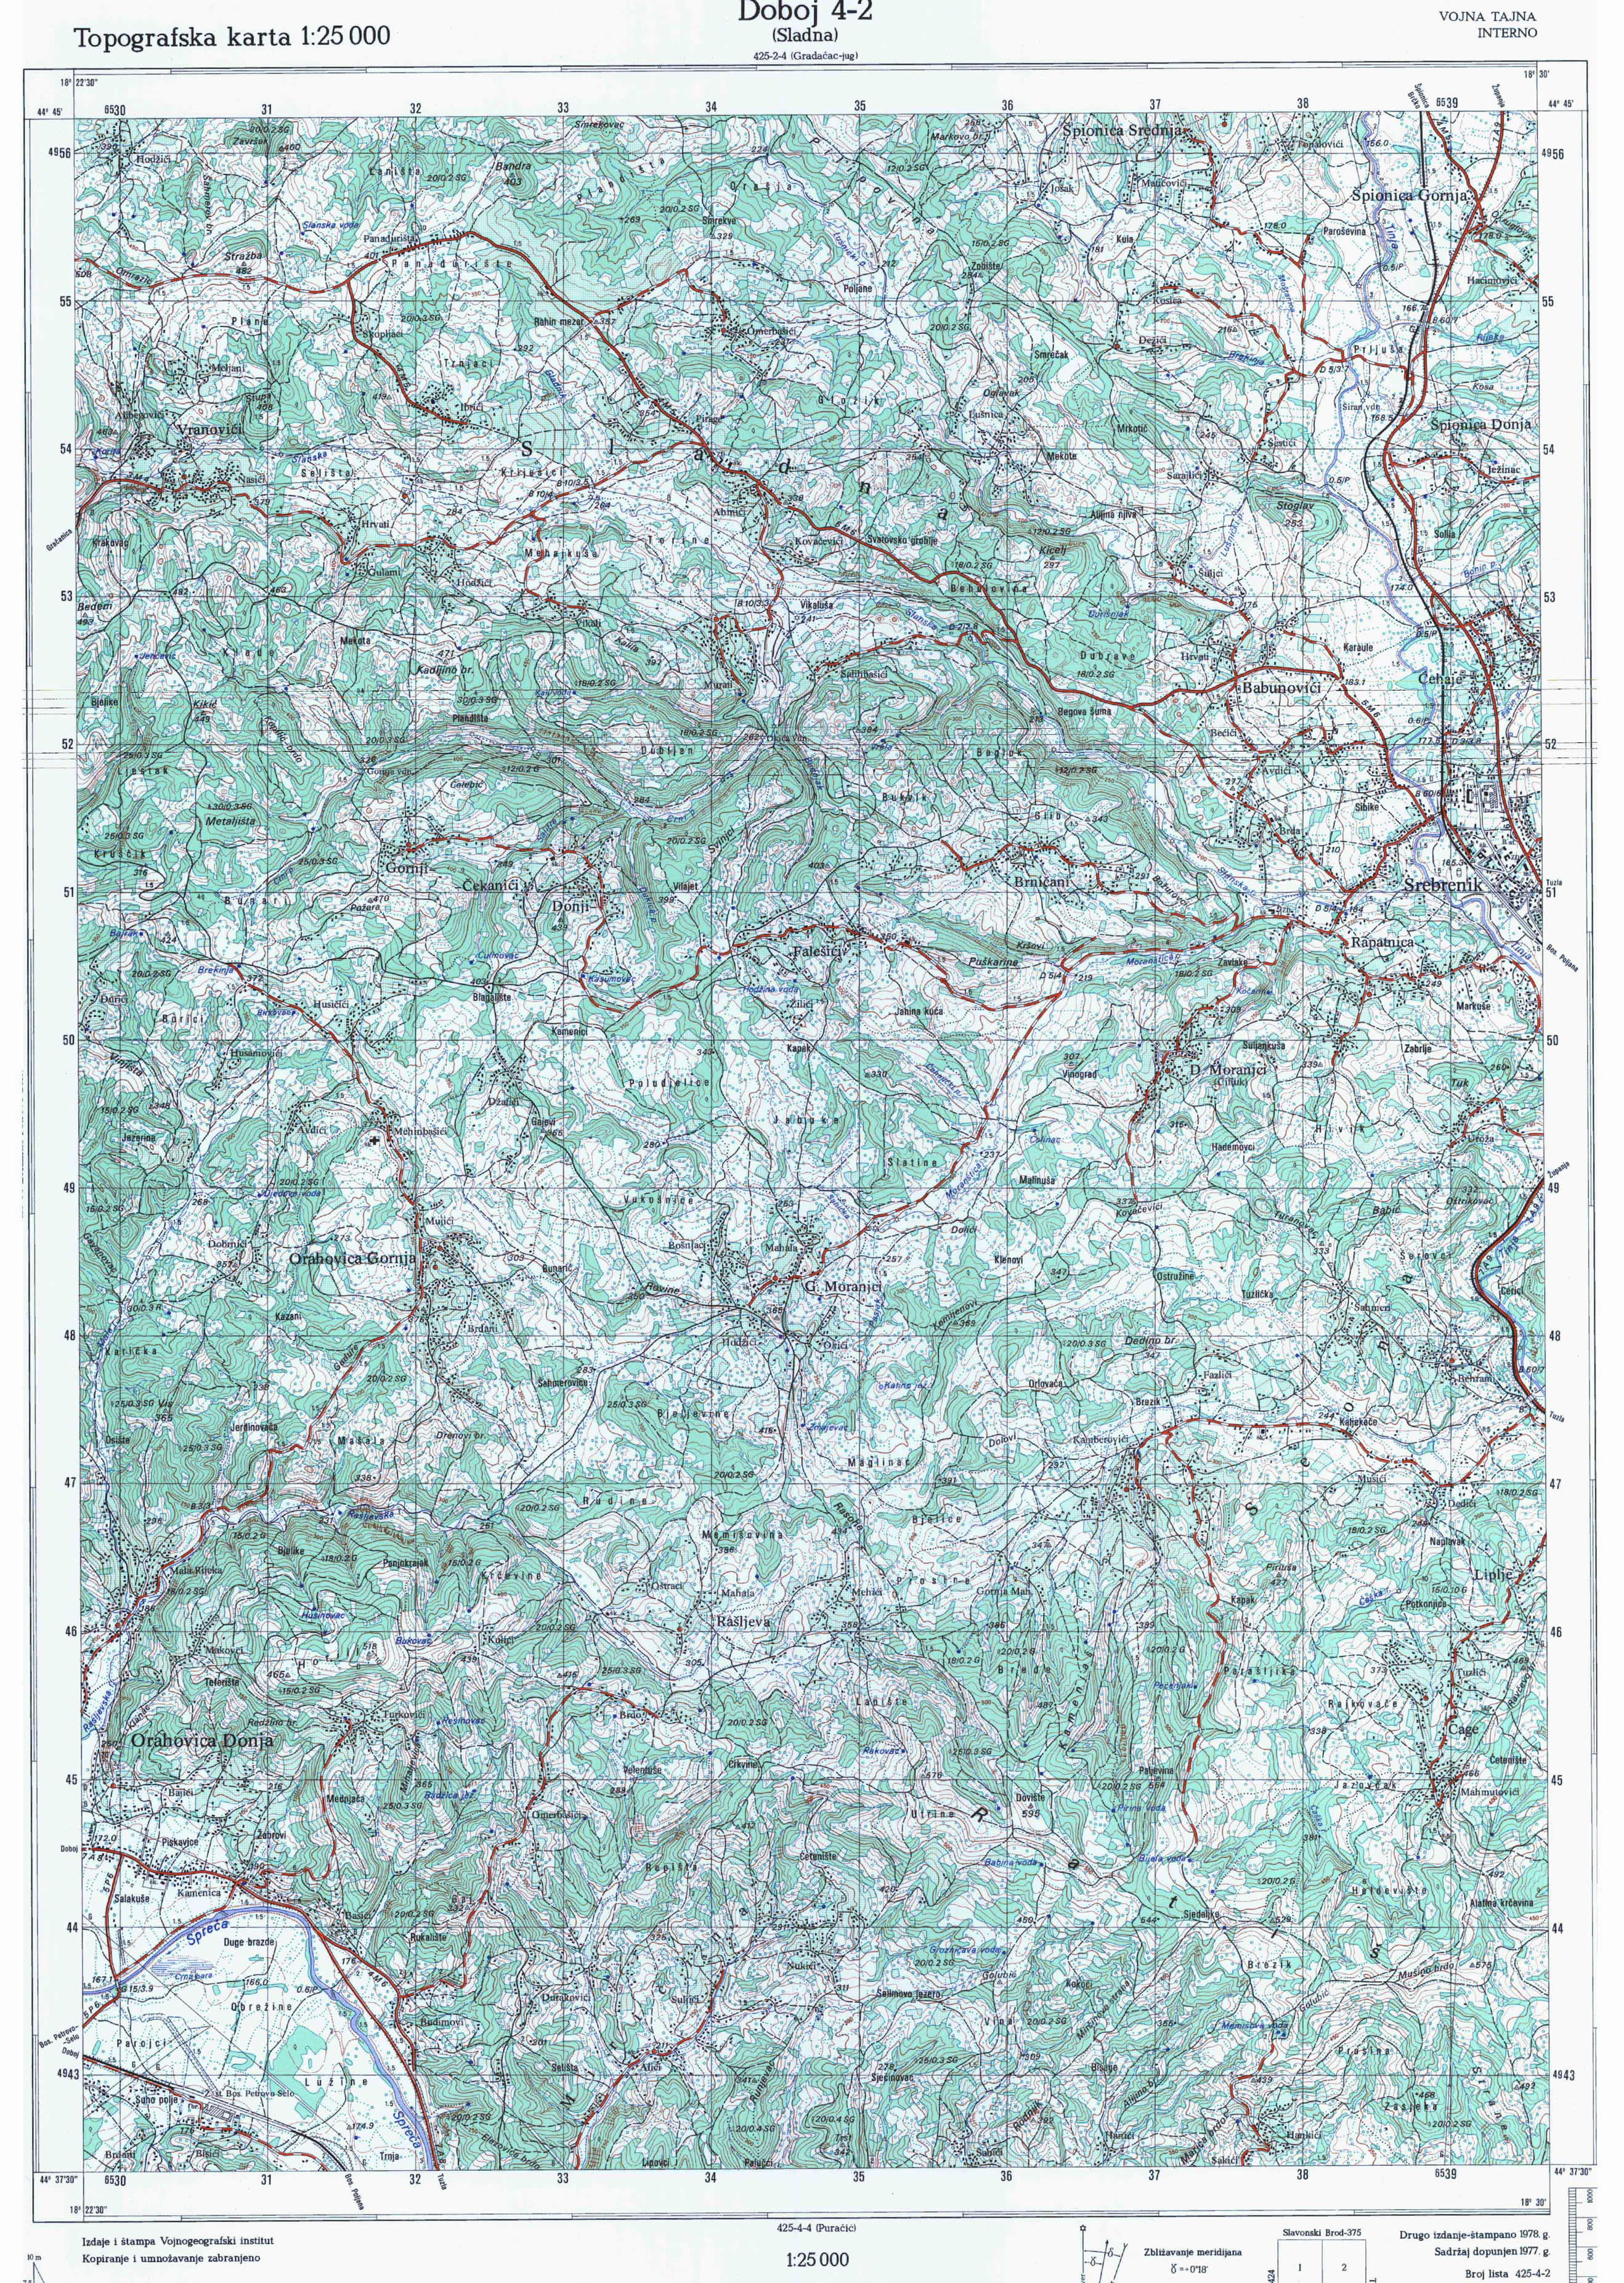  topografska karta BiH 25000 JNA  Doboj